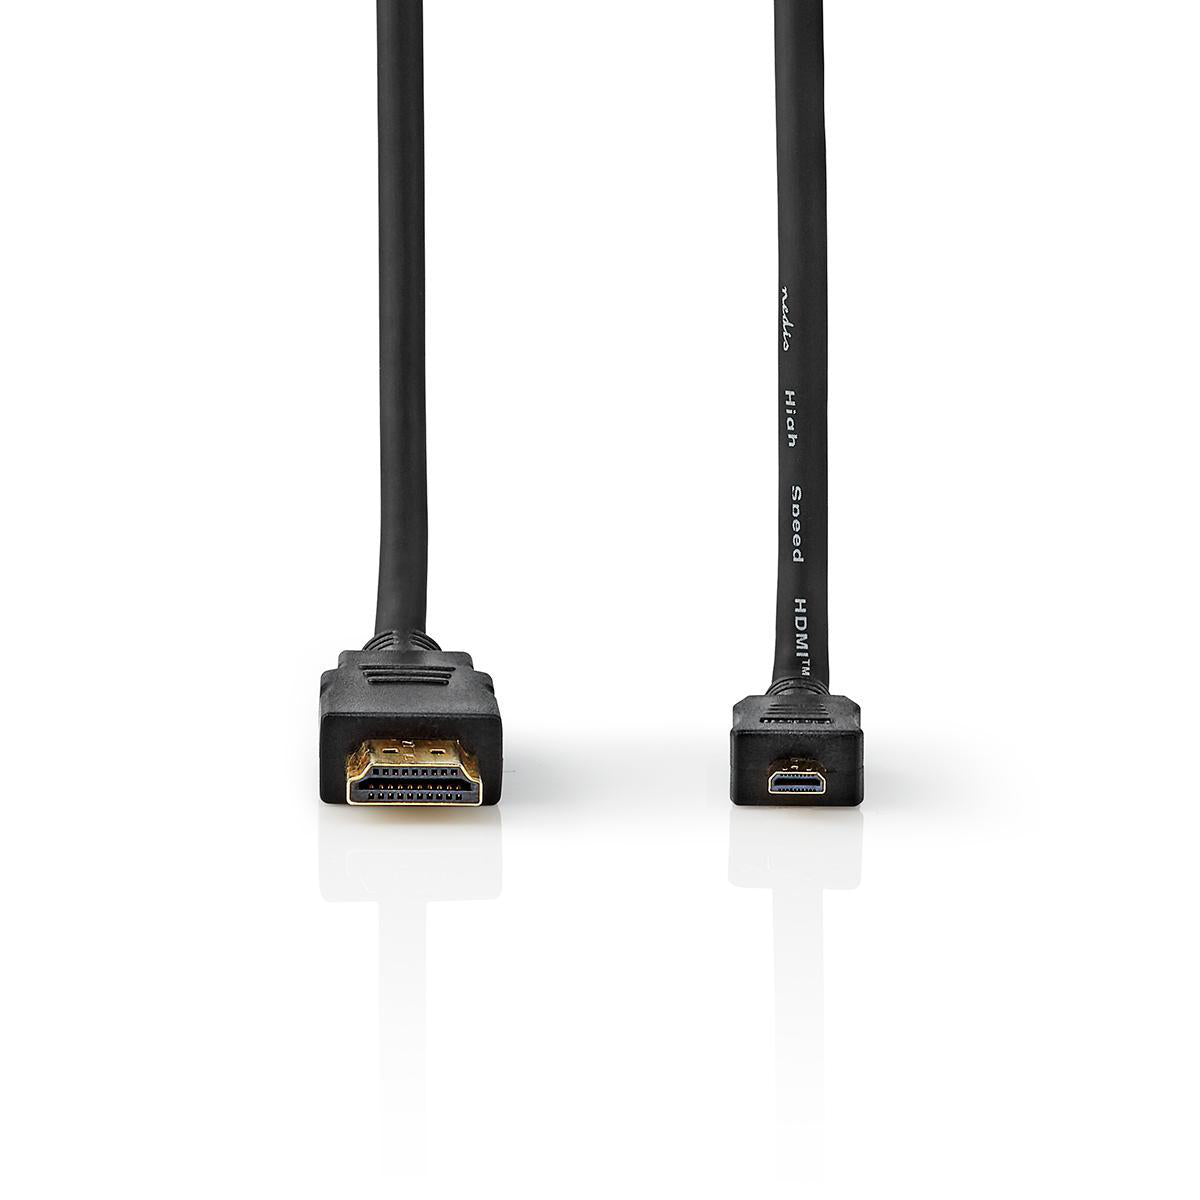 High Speed HDMI ™ Kabel mit Ethernet | HDMI™ Stecker | HDMI™ Micro Stecker | 4K@30Hz | 10.2 Gbps | 1.50 m | Rund | PVC | Schwarz | Aufhänger